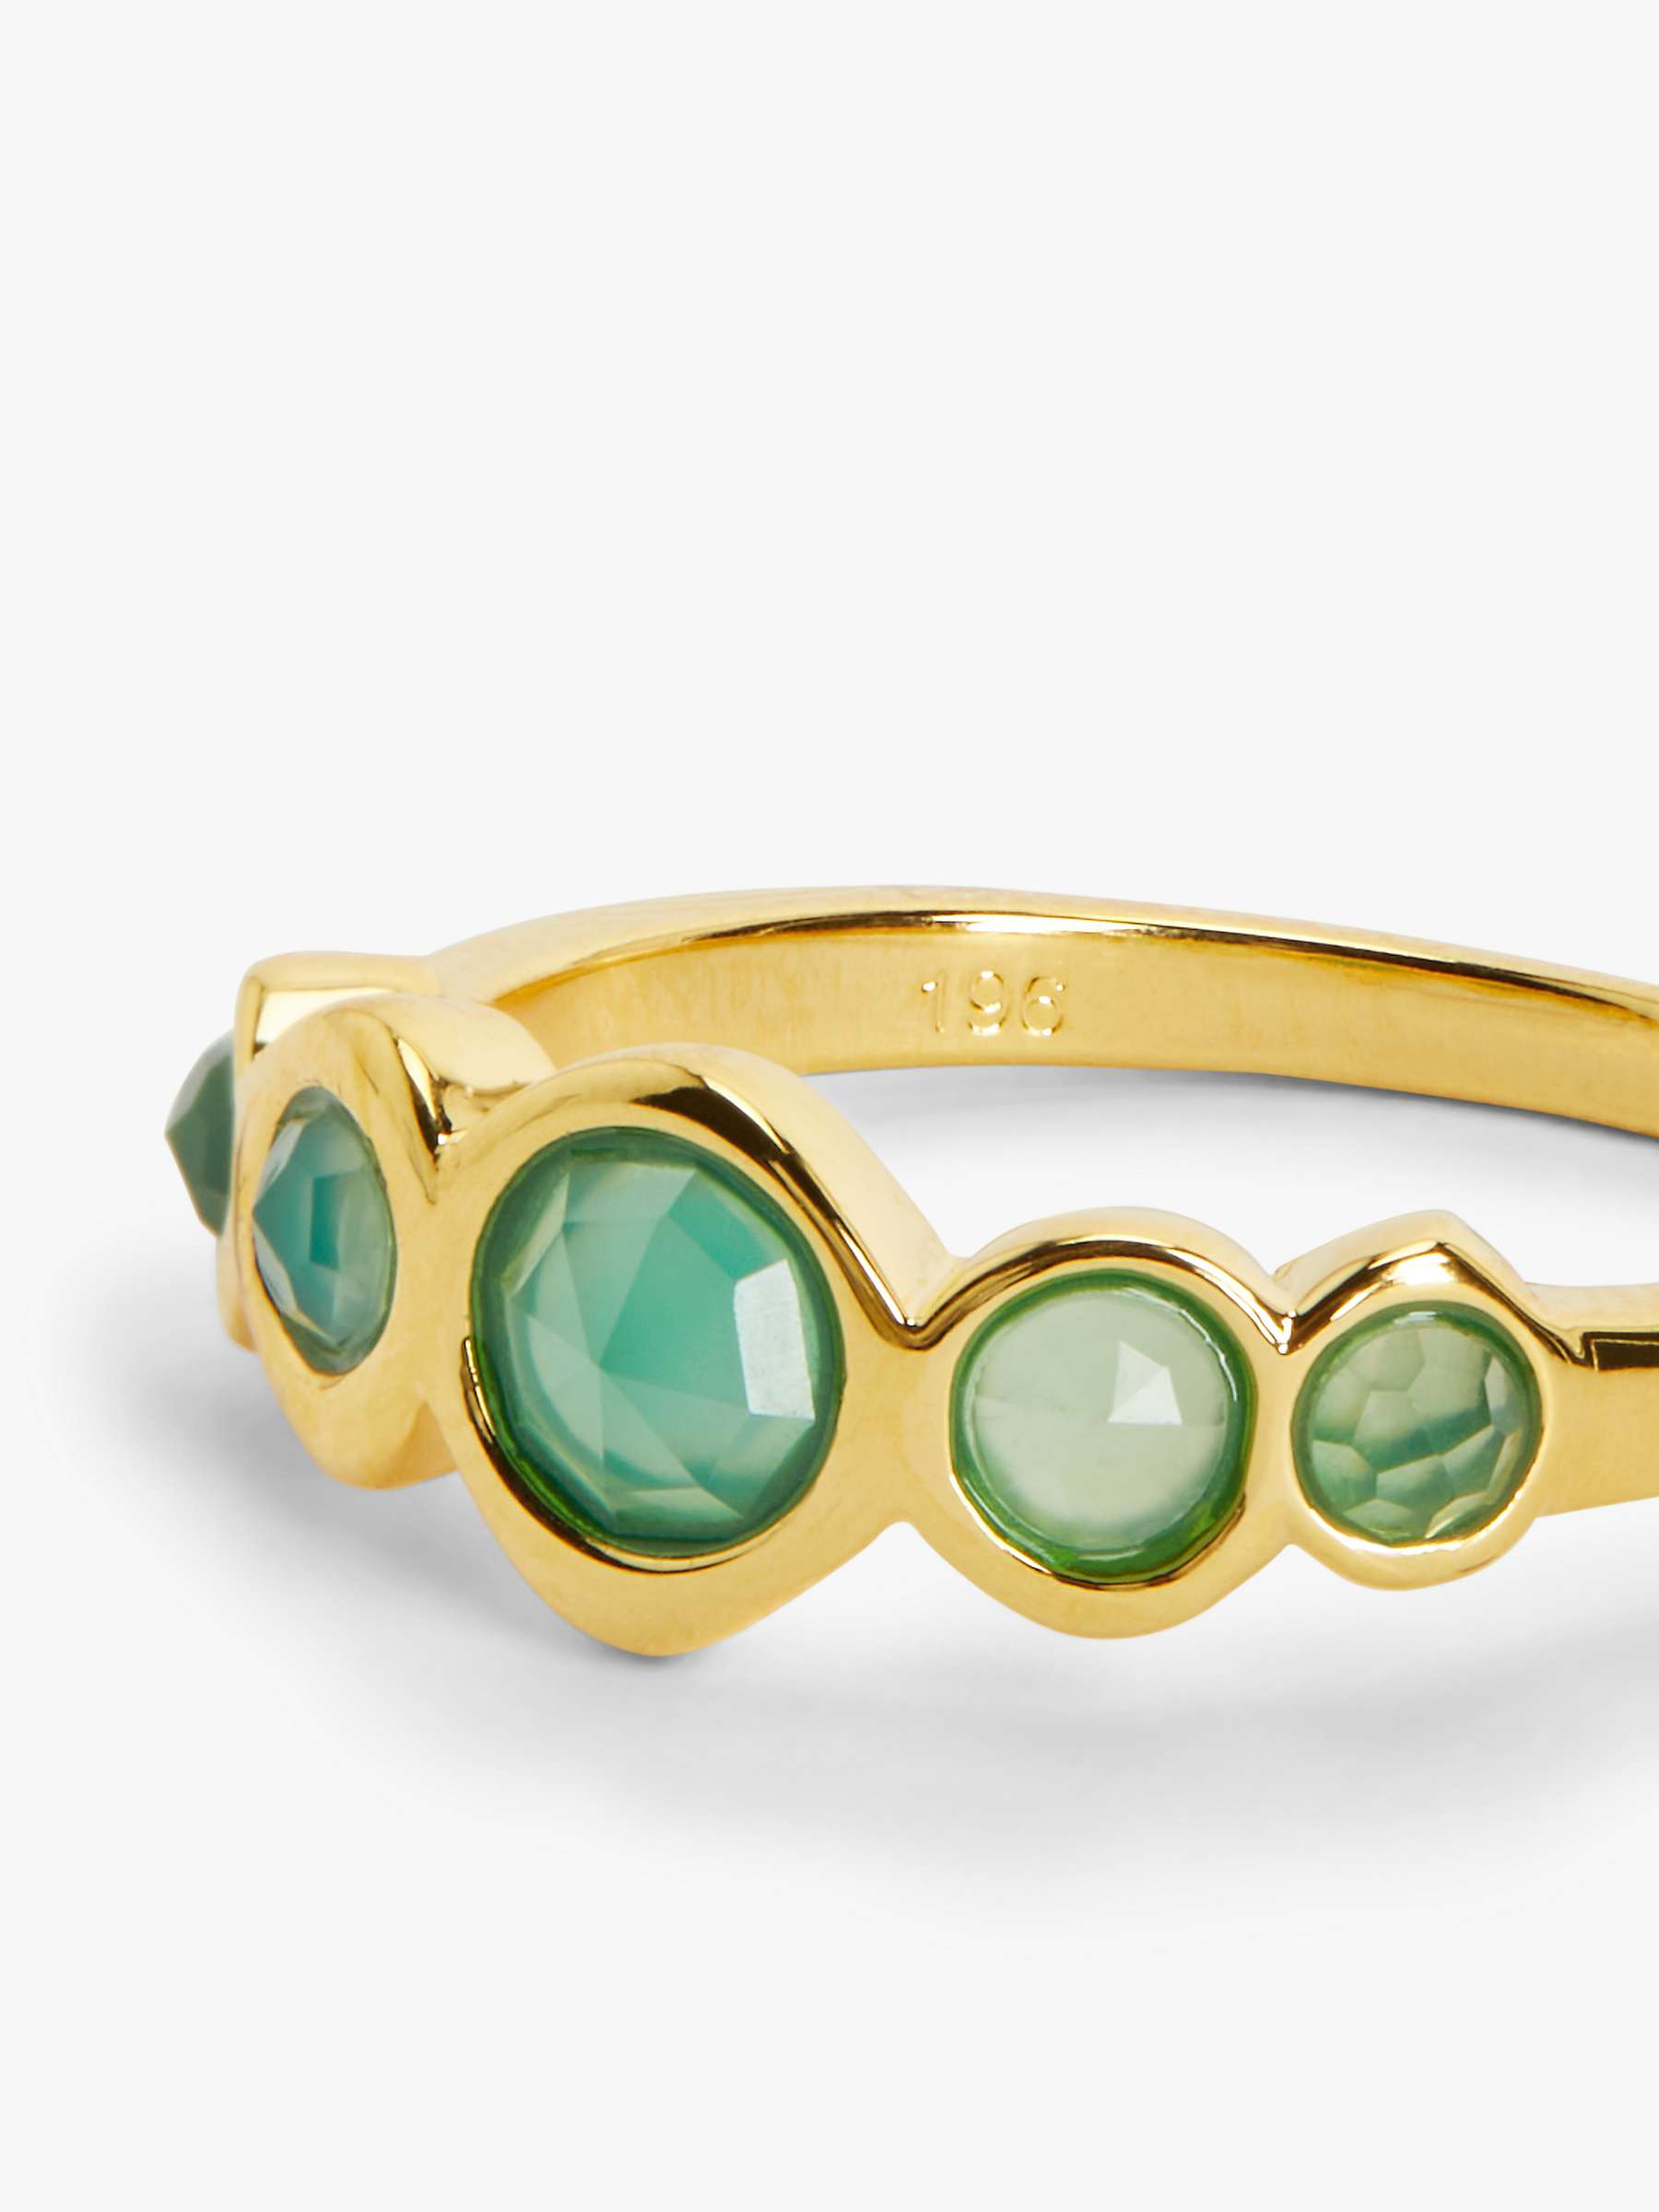 Buy John Lewis Gemstones 5 Stone Ring, Gold/Green Agate Online at johnlewis.com